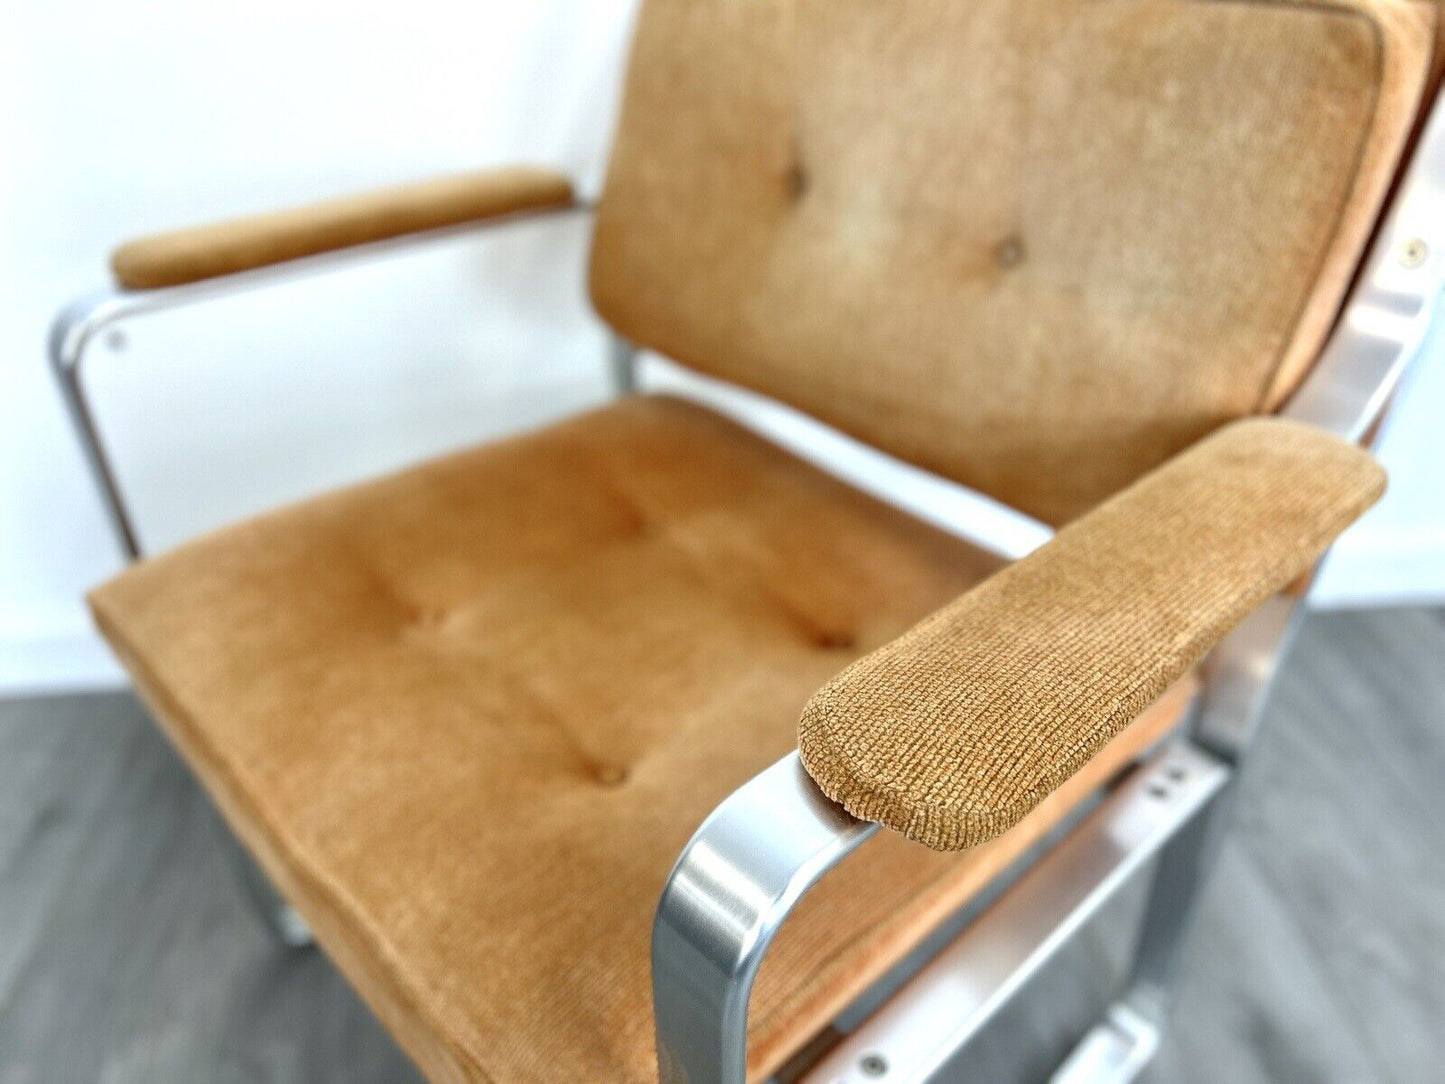 J. O. Carlsson Mondo, Corduroy & Aluminium Club / Lounge Chair